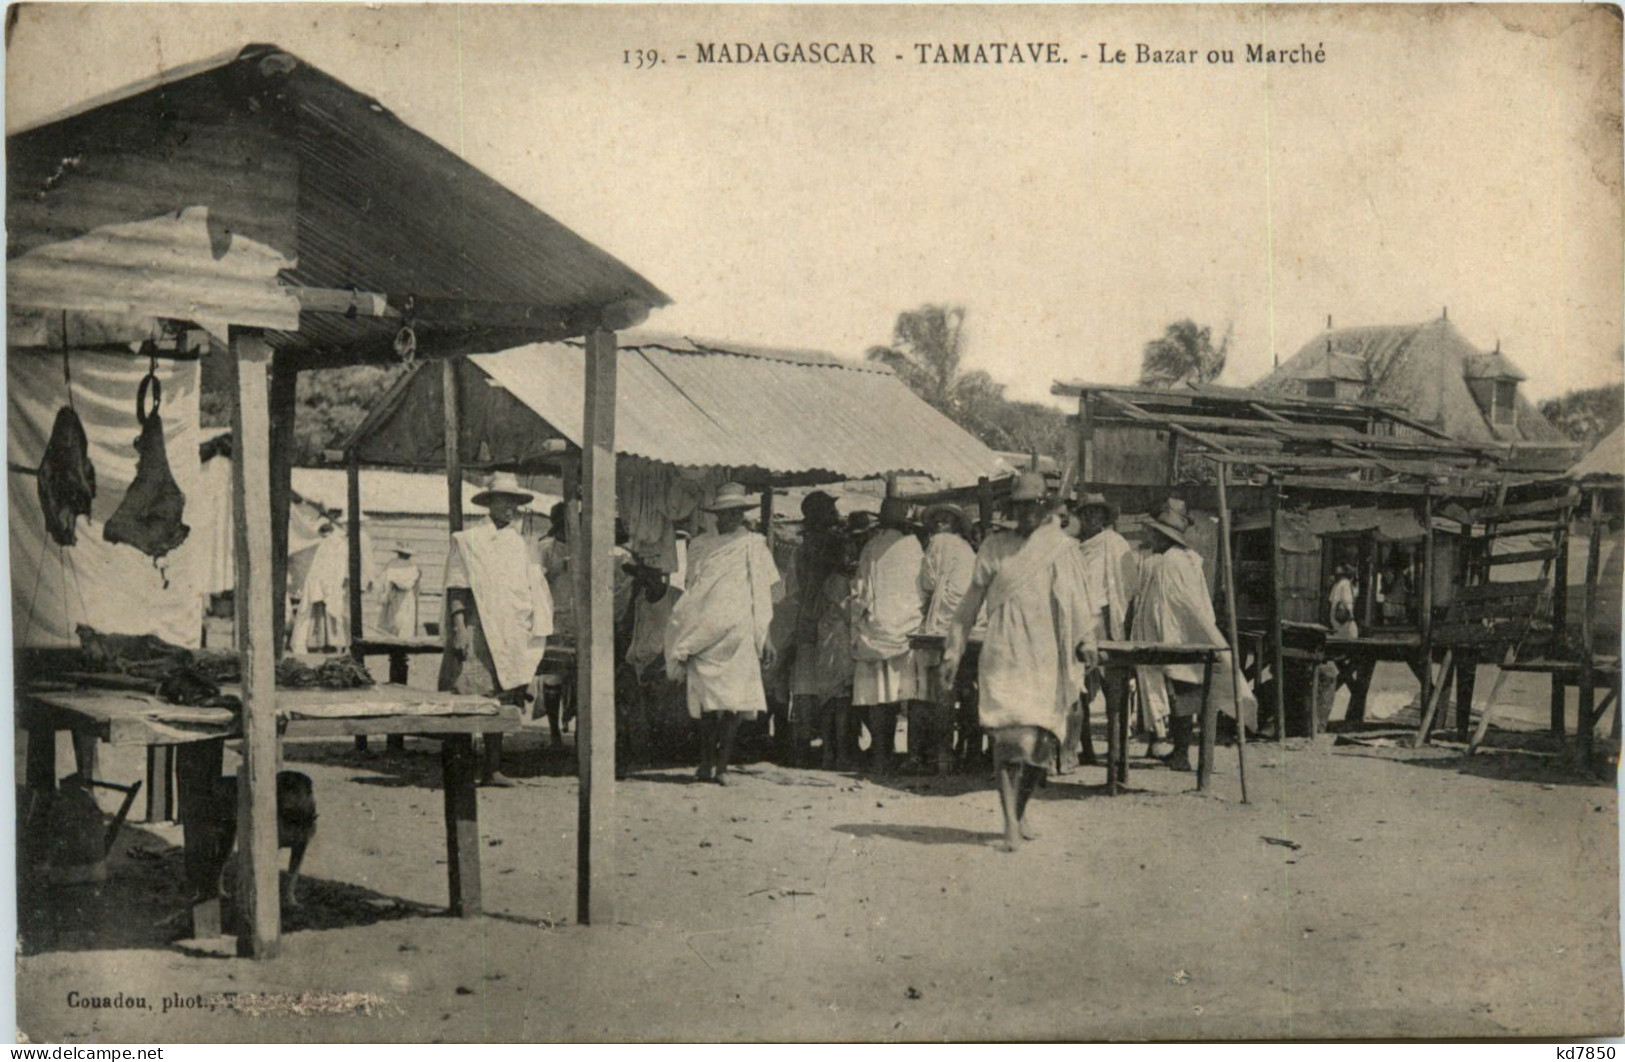 Madagascar - Tamatave - Madagascar